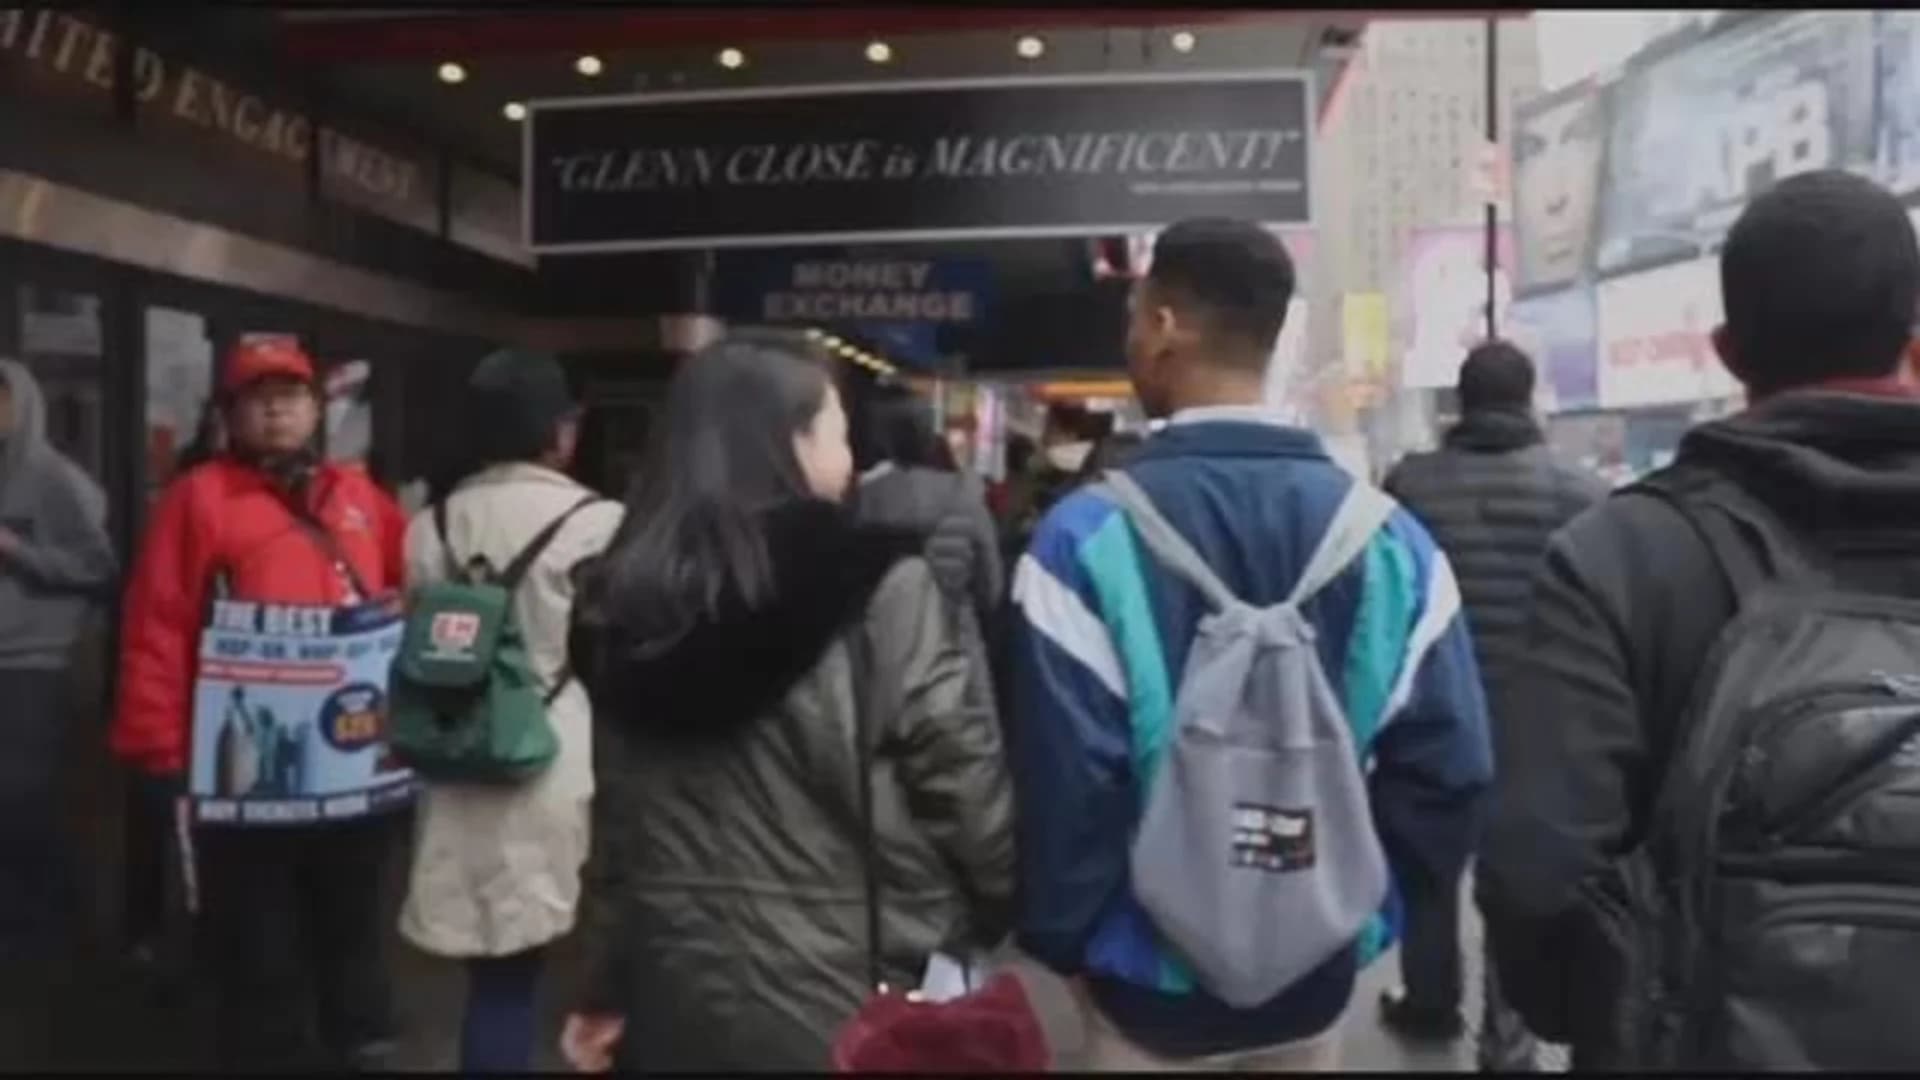 Internship gives city students an up-close look at Broadway